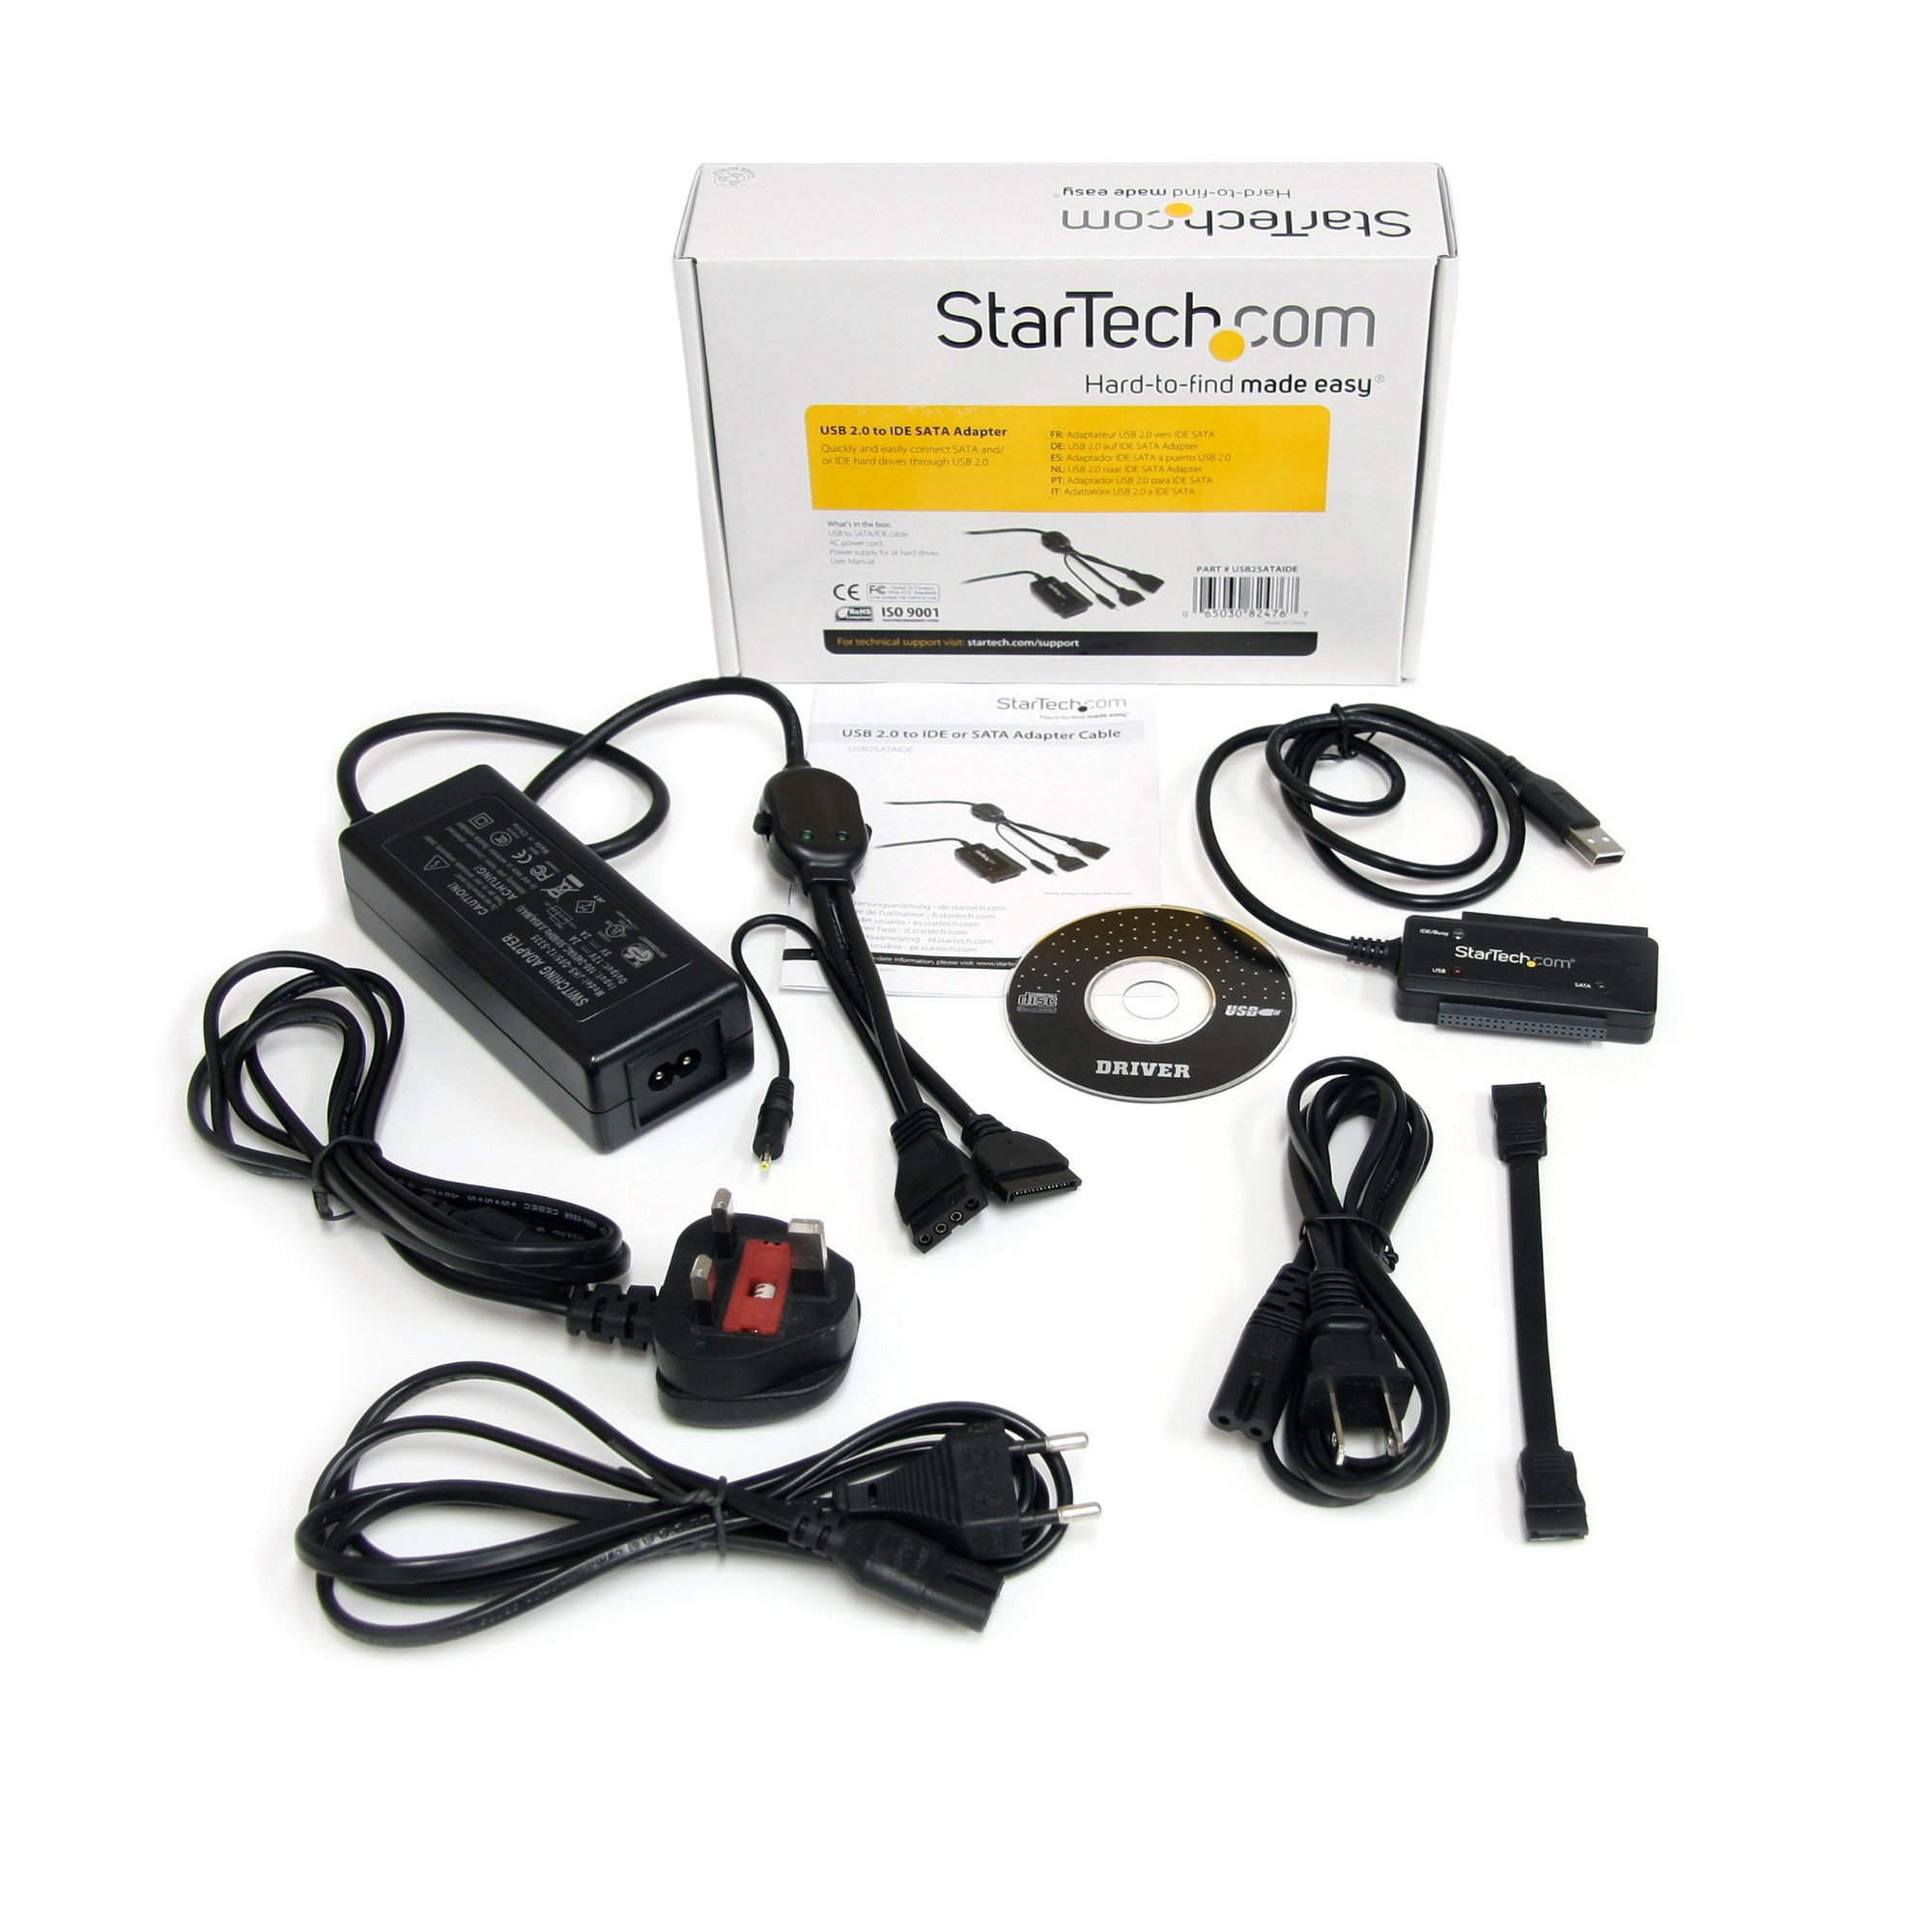 startech.com usb to ide sata adaptor